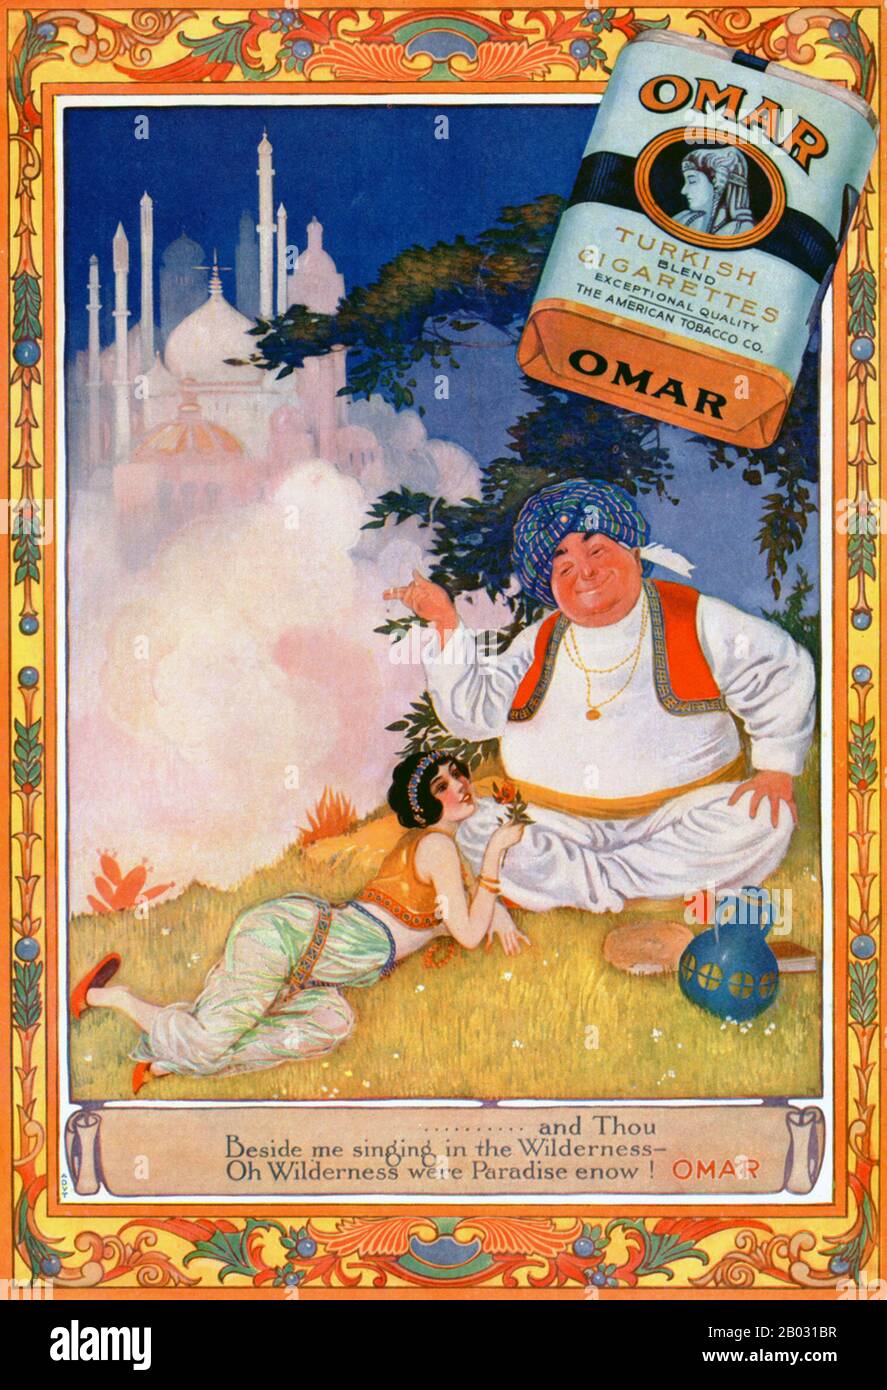 Au début des années 1900, les fabricants de cigarettes turques et égyptiennes ont triplé leurs ventes et sont devenus des concurrents légitimes des grandes marques. En 1911, l'American Tobacco Company a introduit Omar, une cigarette turque de qualité supérieure, afin de concurrencer d'autres grandes marques turques comme Murad. La cigarette a été nommée d'après le poète perse médiéval Omar Khayyam, qui a connu une résurgence de popularité de 1900 à 1930. Les publicités pour Omar cigarettes ont fait référence au célèbre poème de Khayyam, le Rubaiyat , et ont porté sur des thèmes de plaisir, de loisirs et de luxe. Banque D'Images